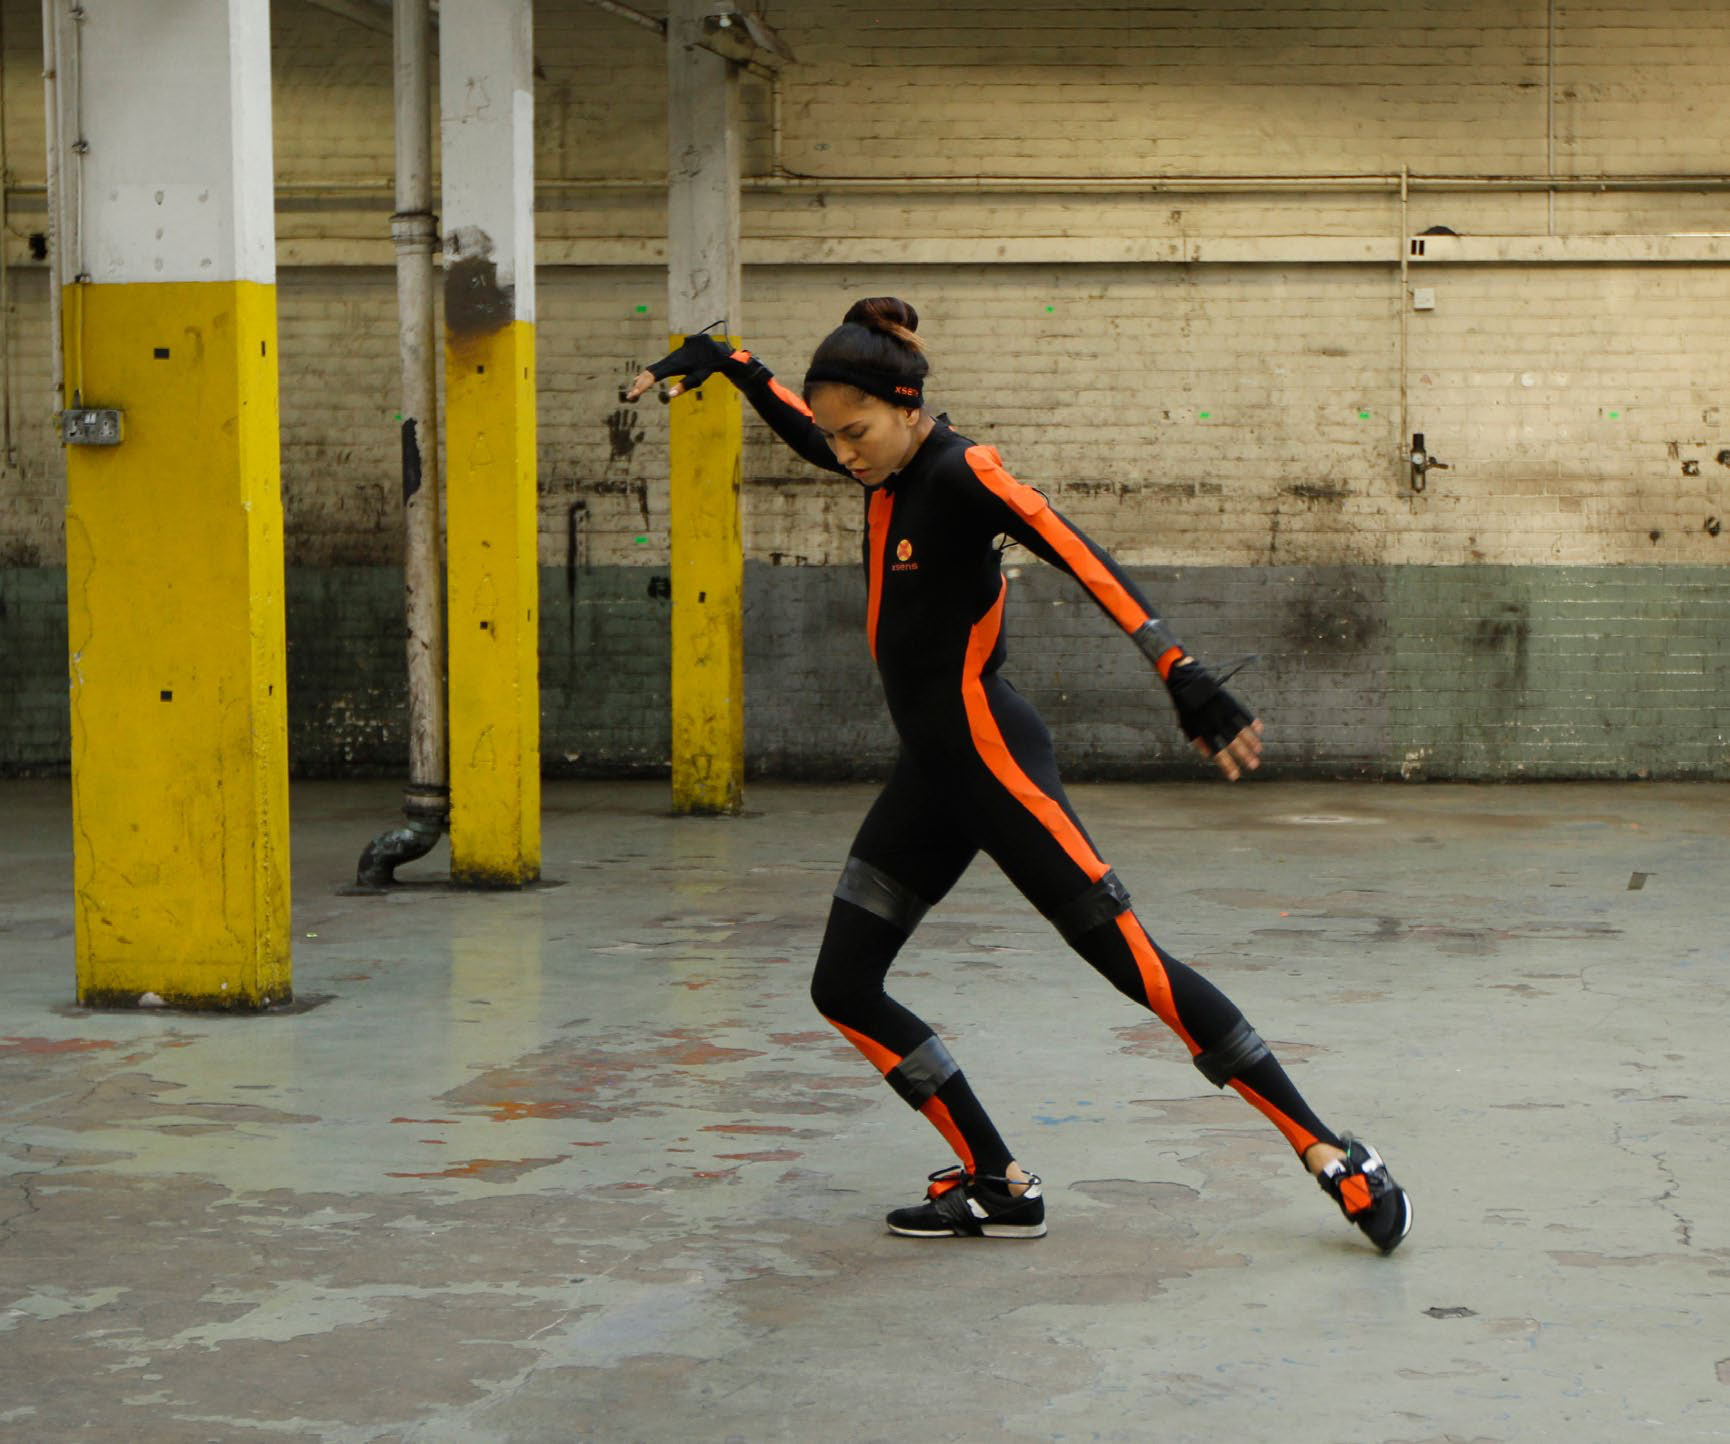 xsens motion capture suit